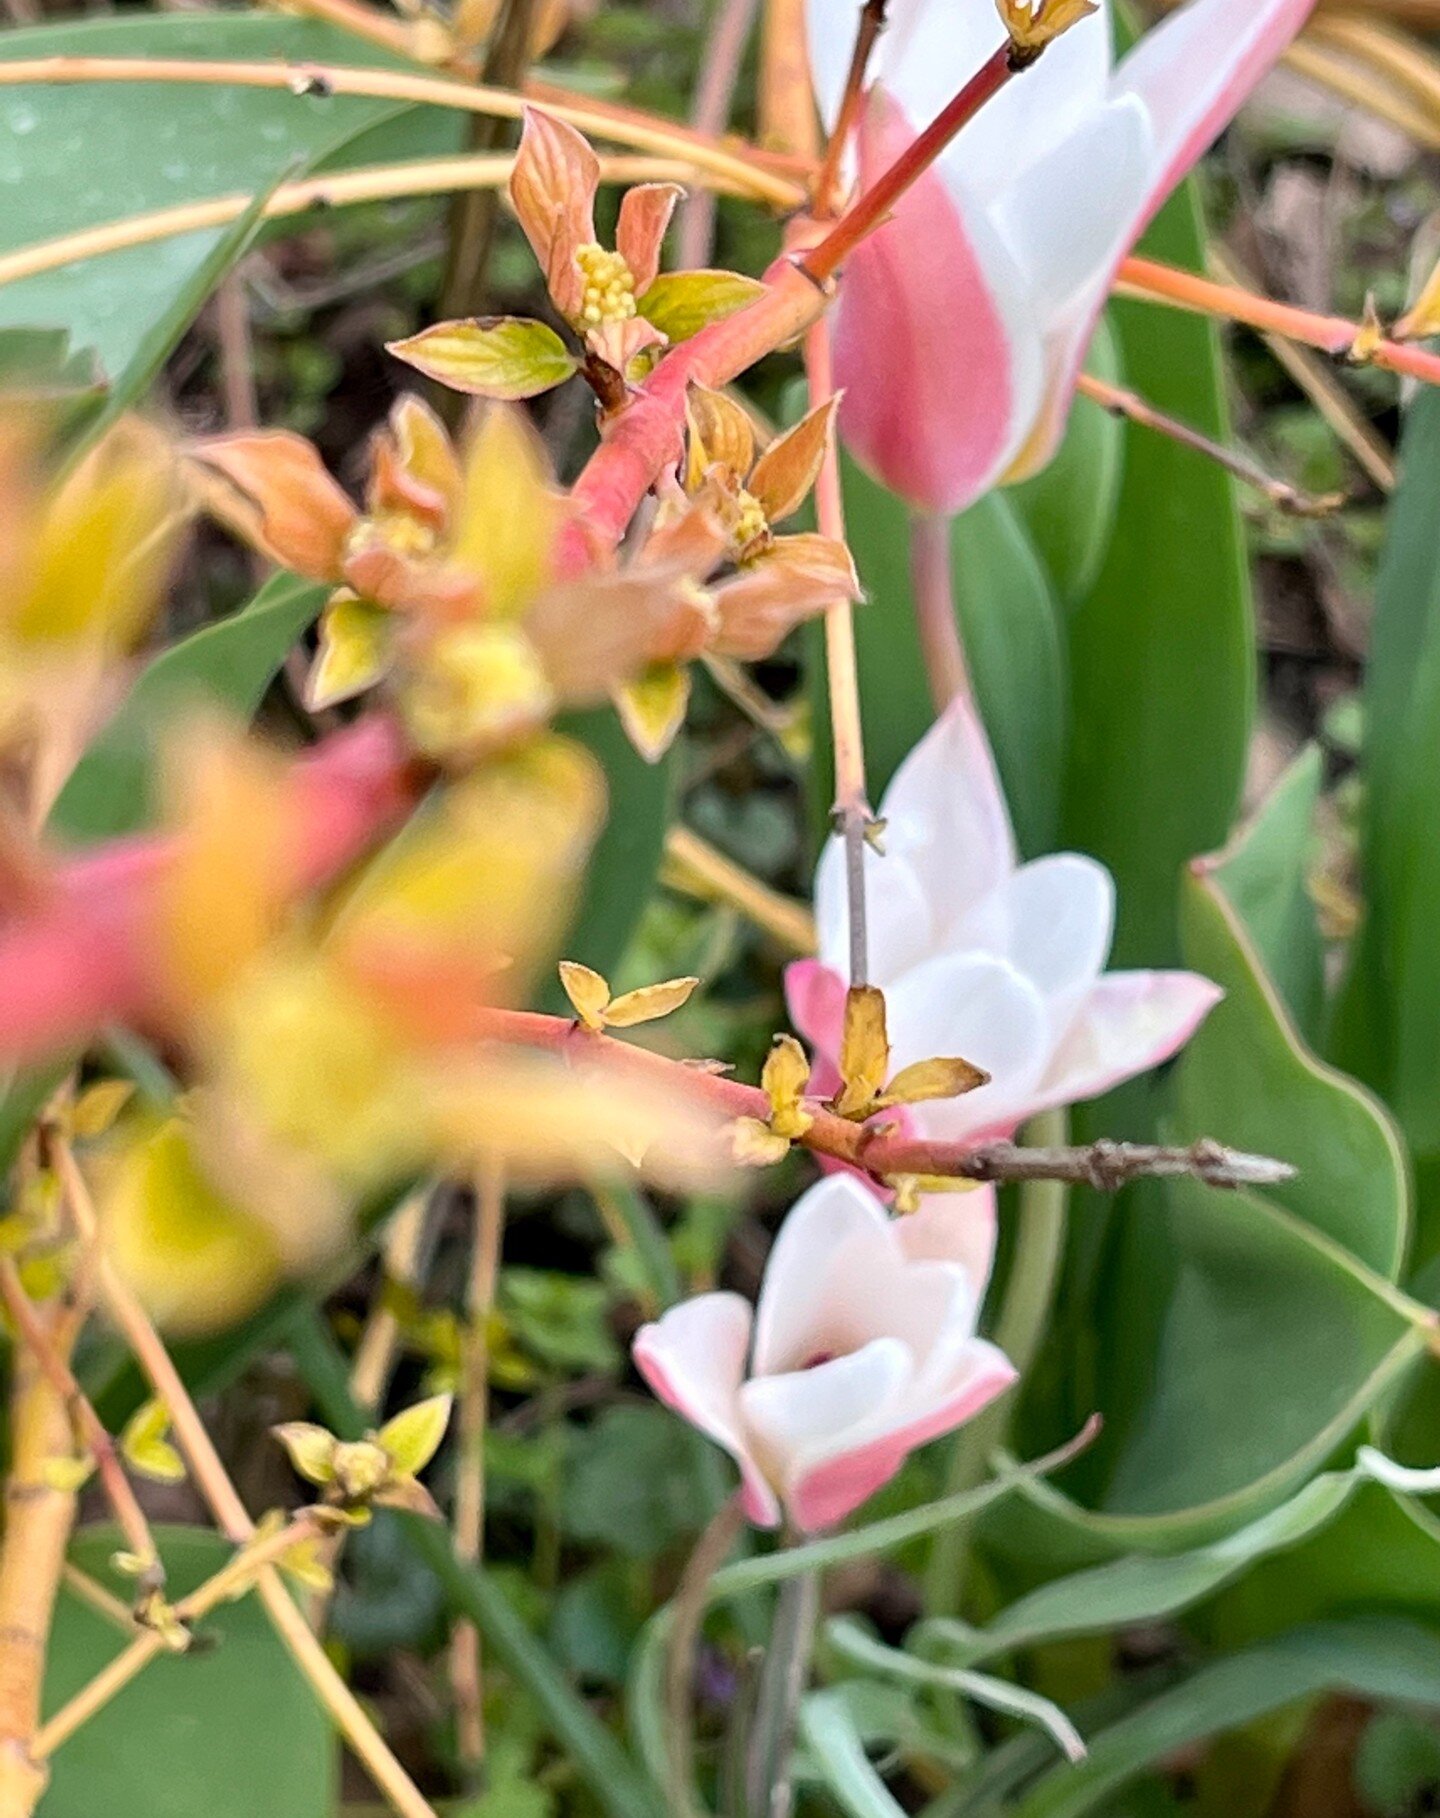 Wildtulpen (Tulipa sylvestris) sind wahre Natursch&ouml;nheiten! Diese zarten und farbenfrohen Blumen sind in verschiedenen T&ouml;nen von Gelb bis Wei&szlig; erh&auml;ltlich und verzaubern mit ihren sternf&ouml;rmigen Bl&uuml;ten. Ihre robuste Natur